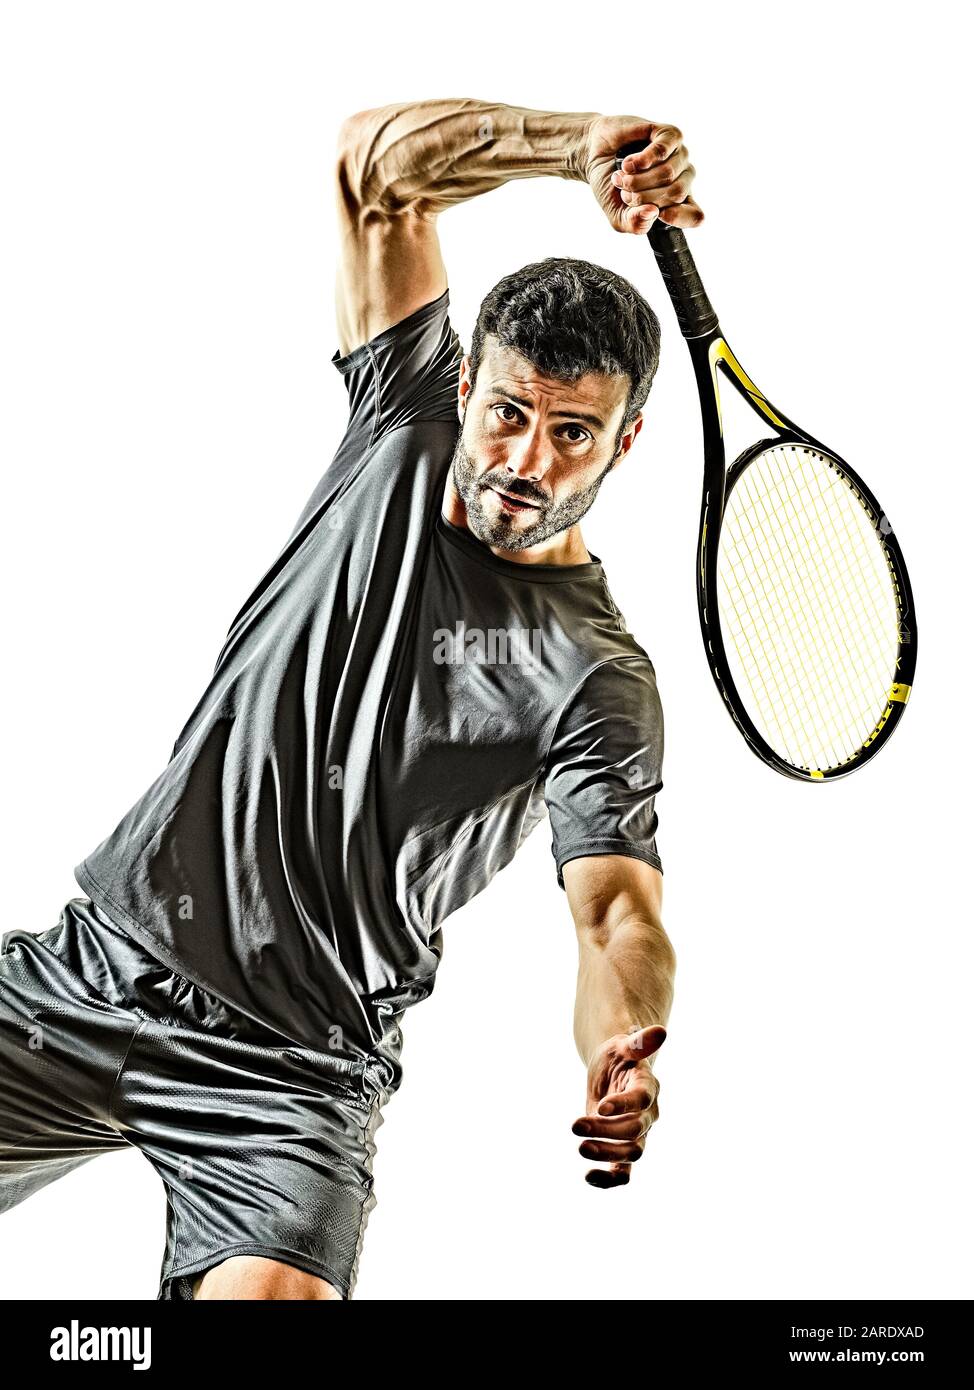 Ein kaukasischer, reifer Tennisspieler, der die Vorderansicht im Studio vorhat, isoliert auf weißem Hintergrund Stockfoto